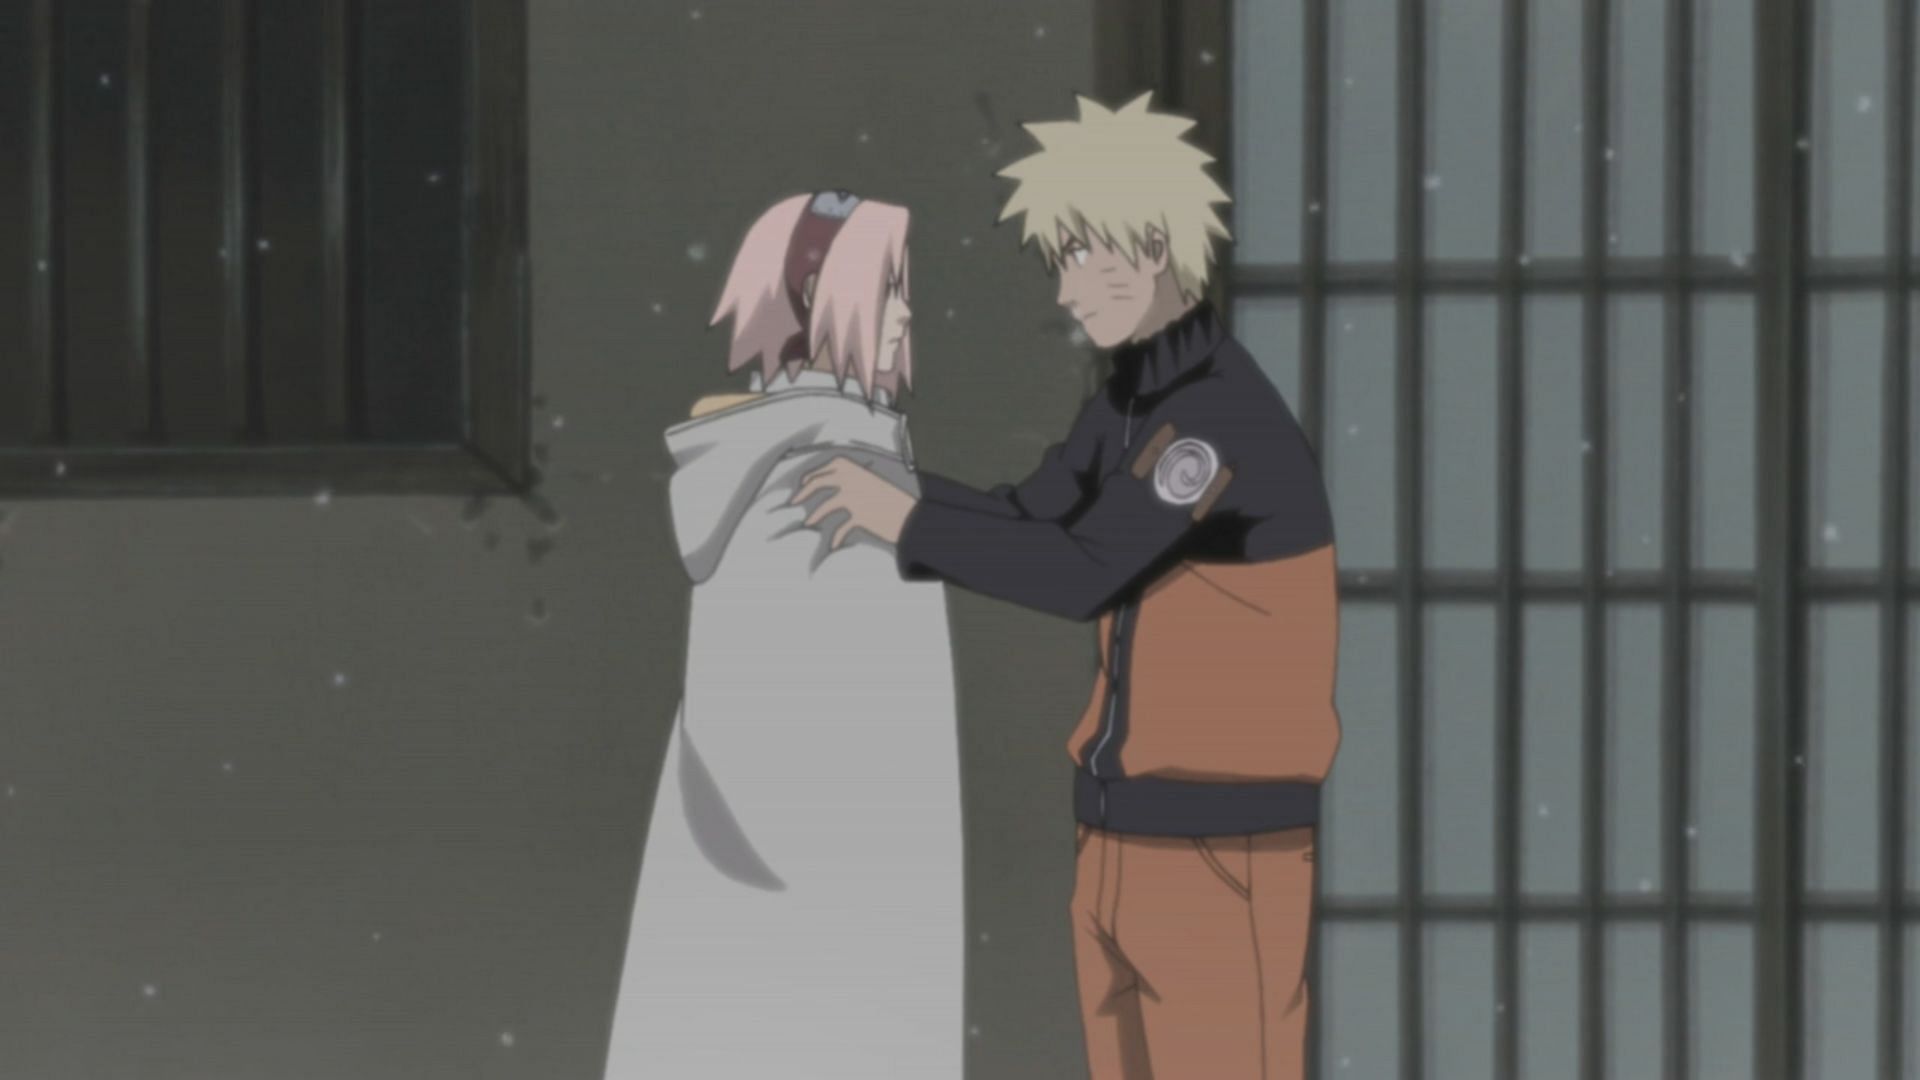 Naruto and Sakura from the series (Image via Pierrot)